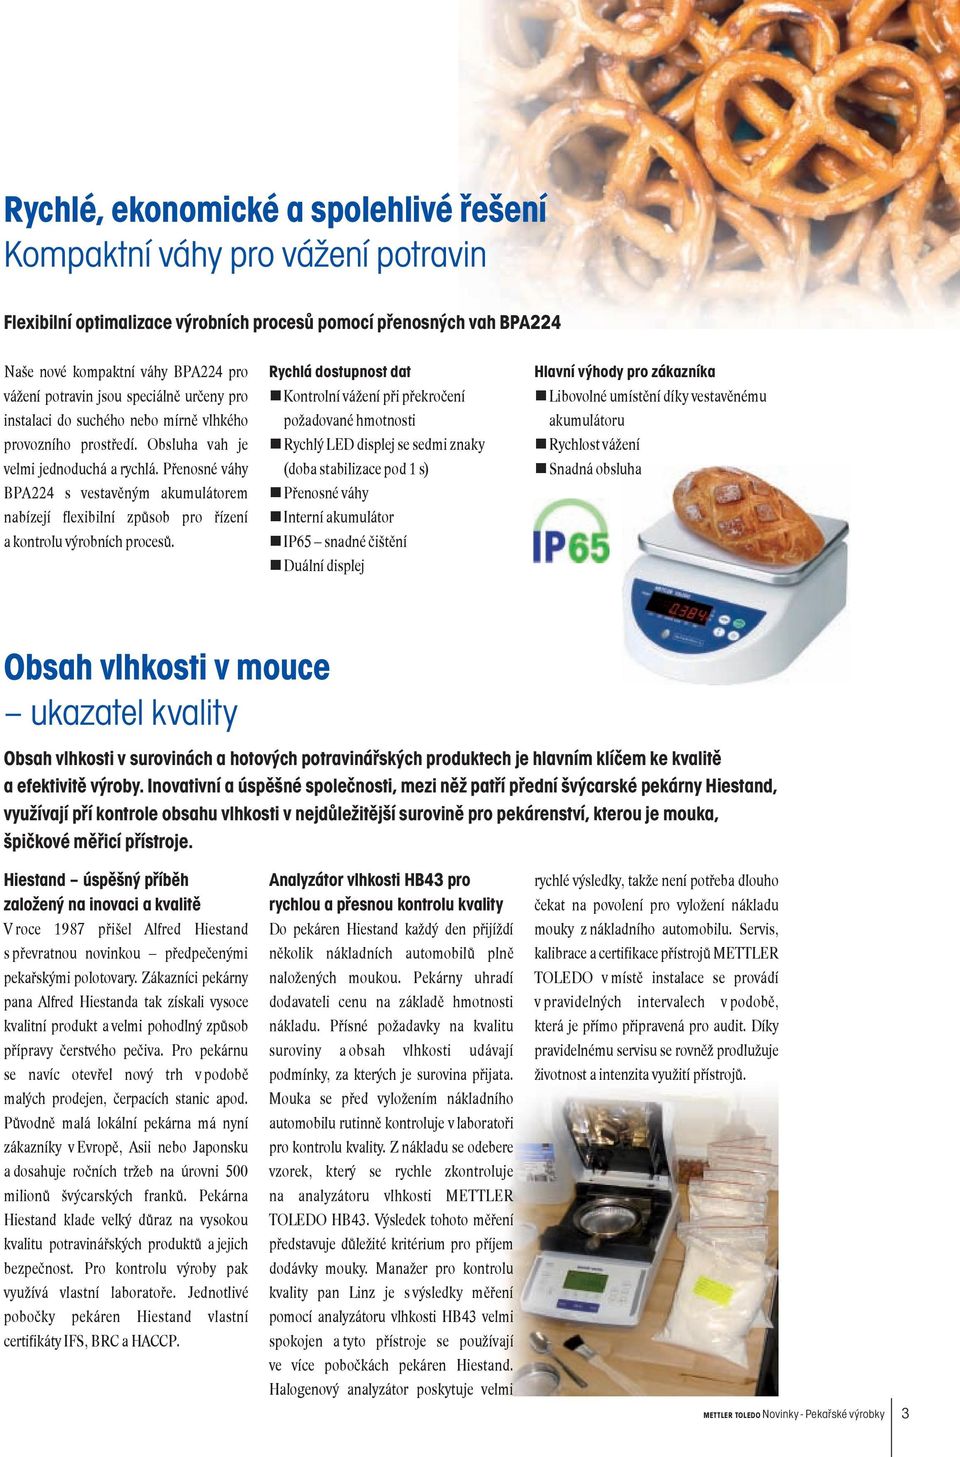 Přenosné váhy BPA224 s vestavěným akumulátorem nabízejí flexibilní způsob pro řízení a kontrolu výrobních procesů.